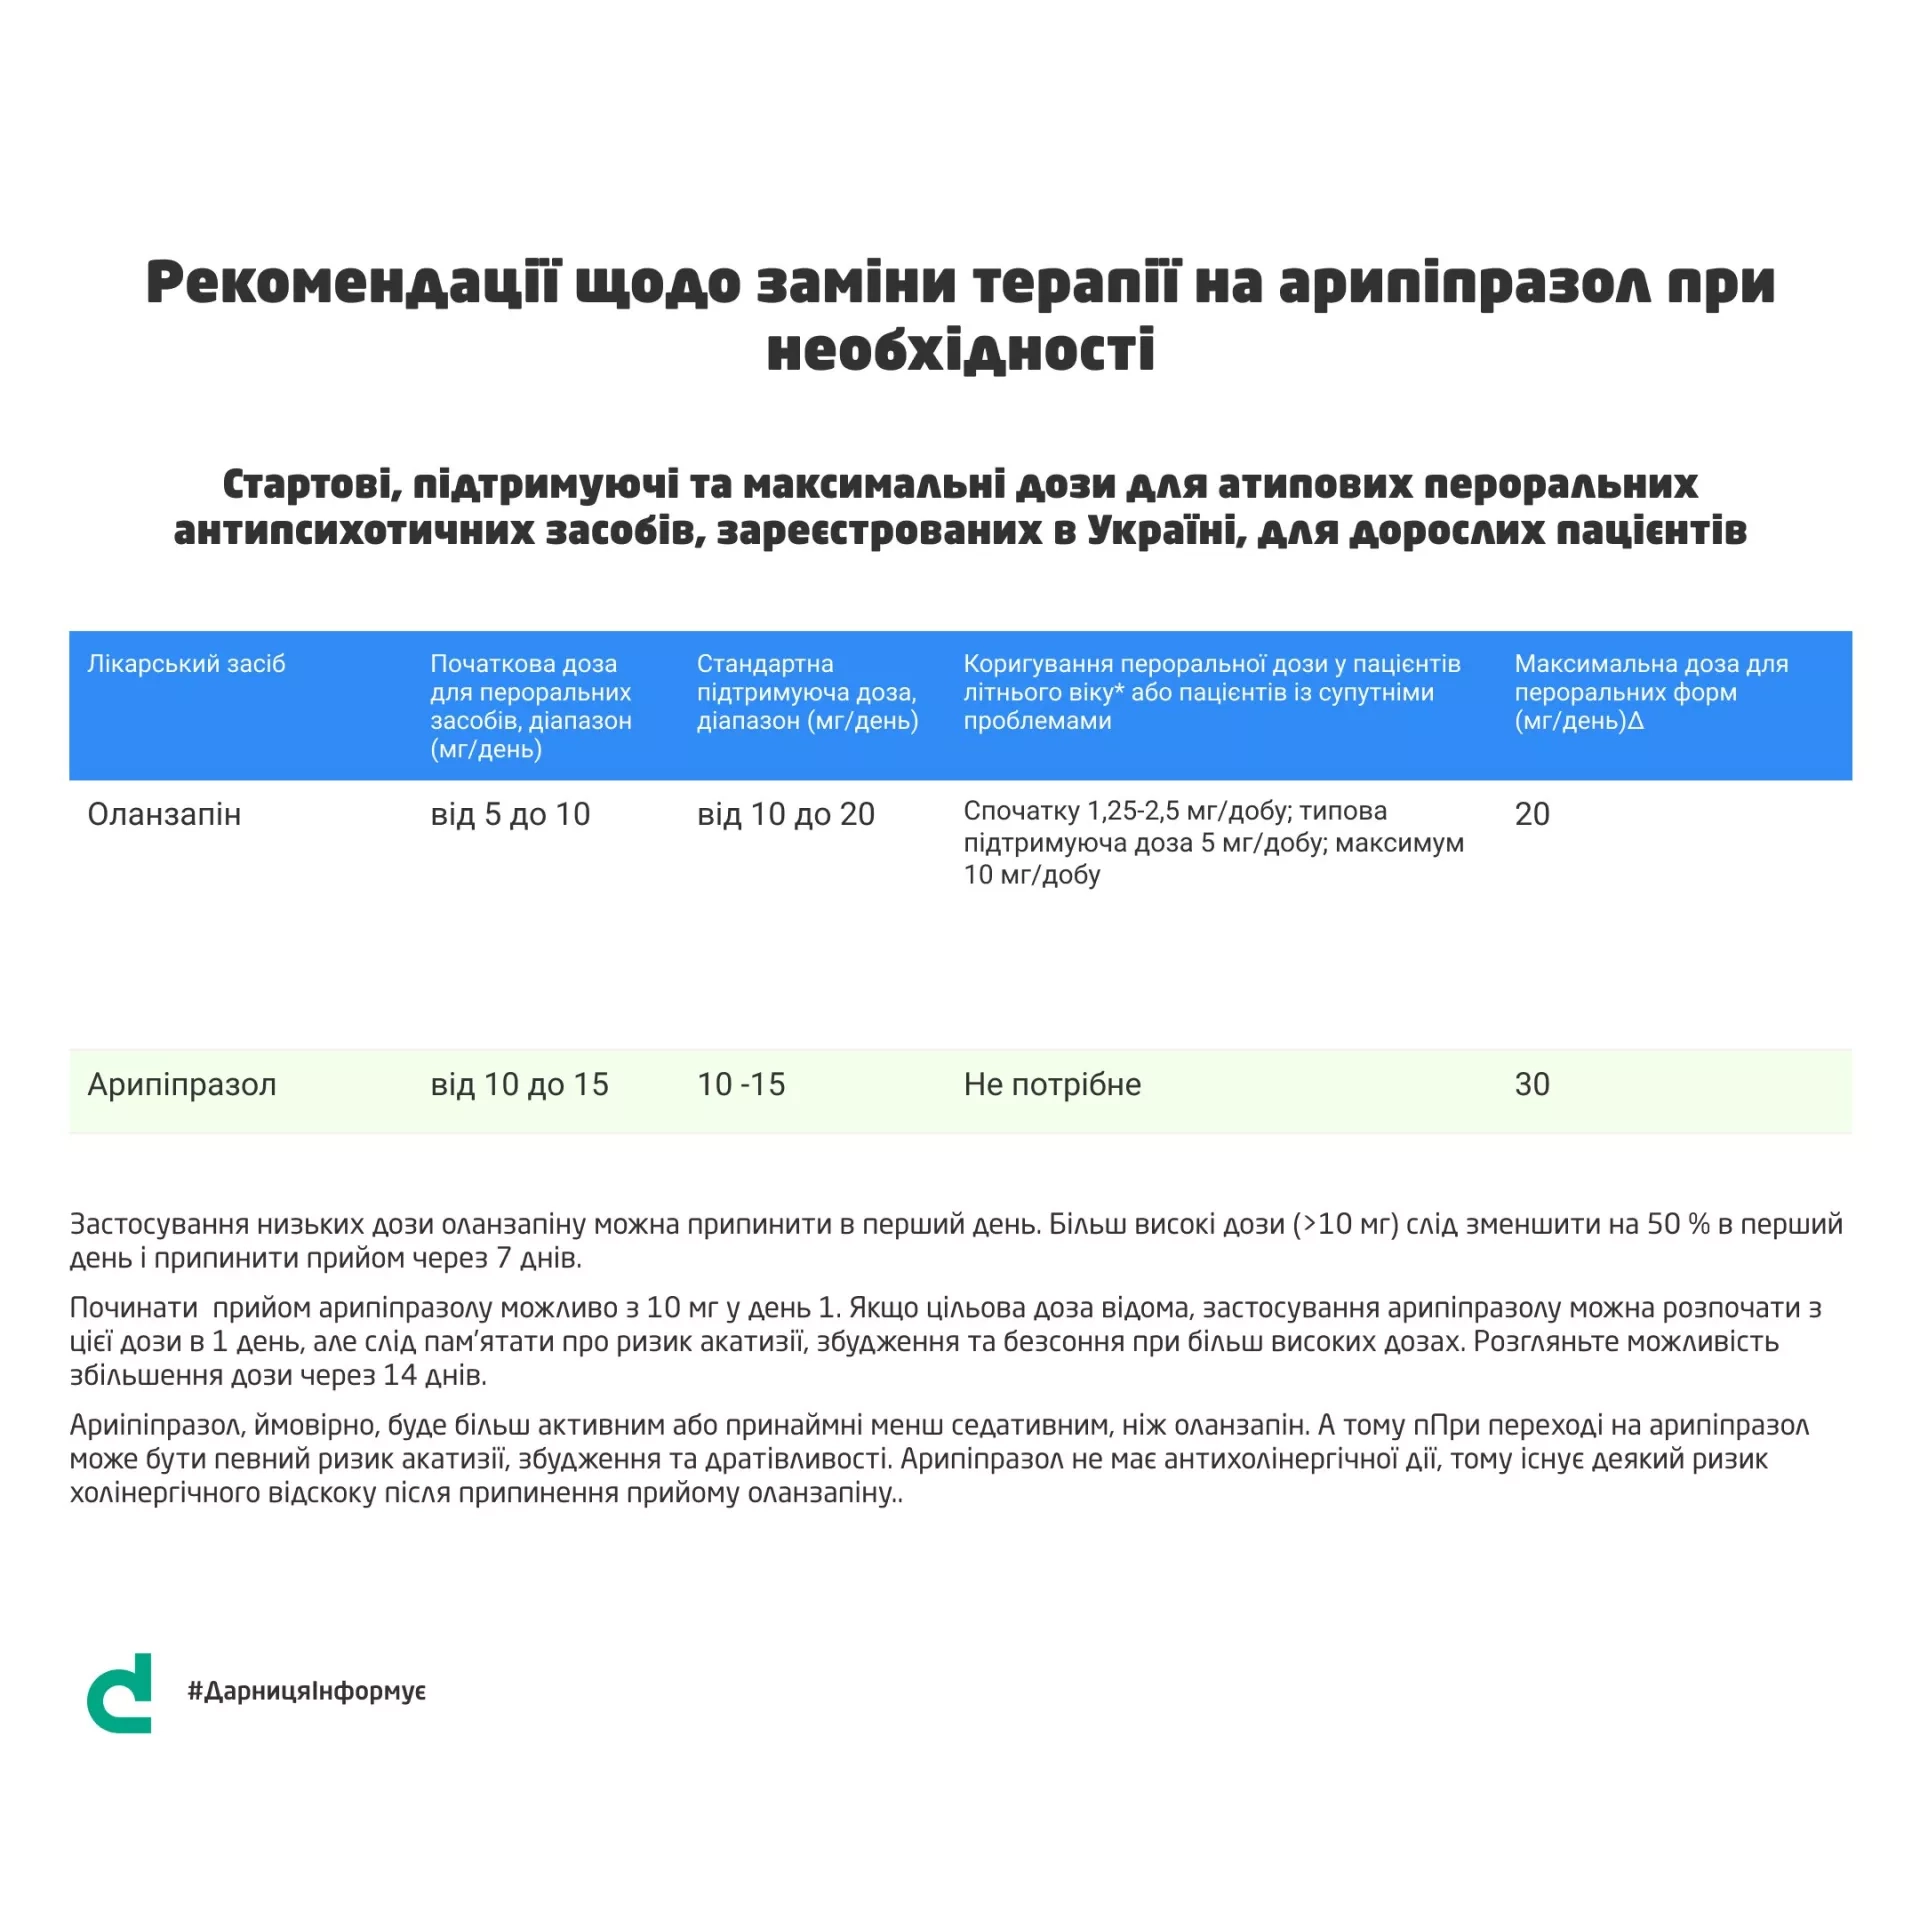 #ДарницяІнформує: Еквівалентні дози дози антидеприсантів та антипсихотичних засобів